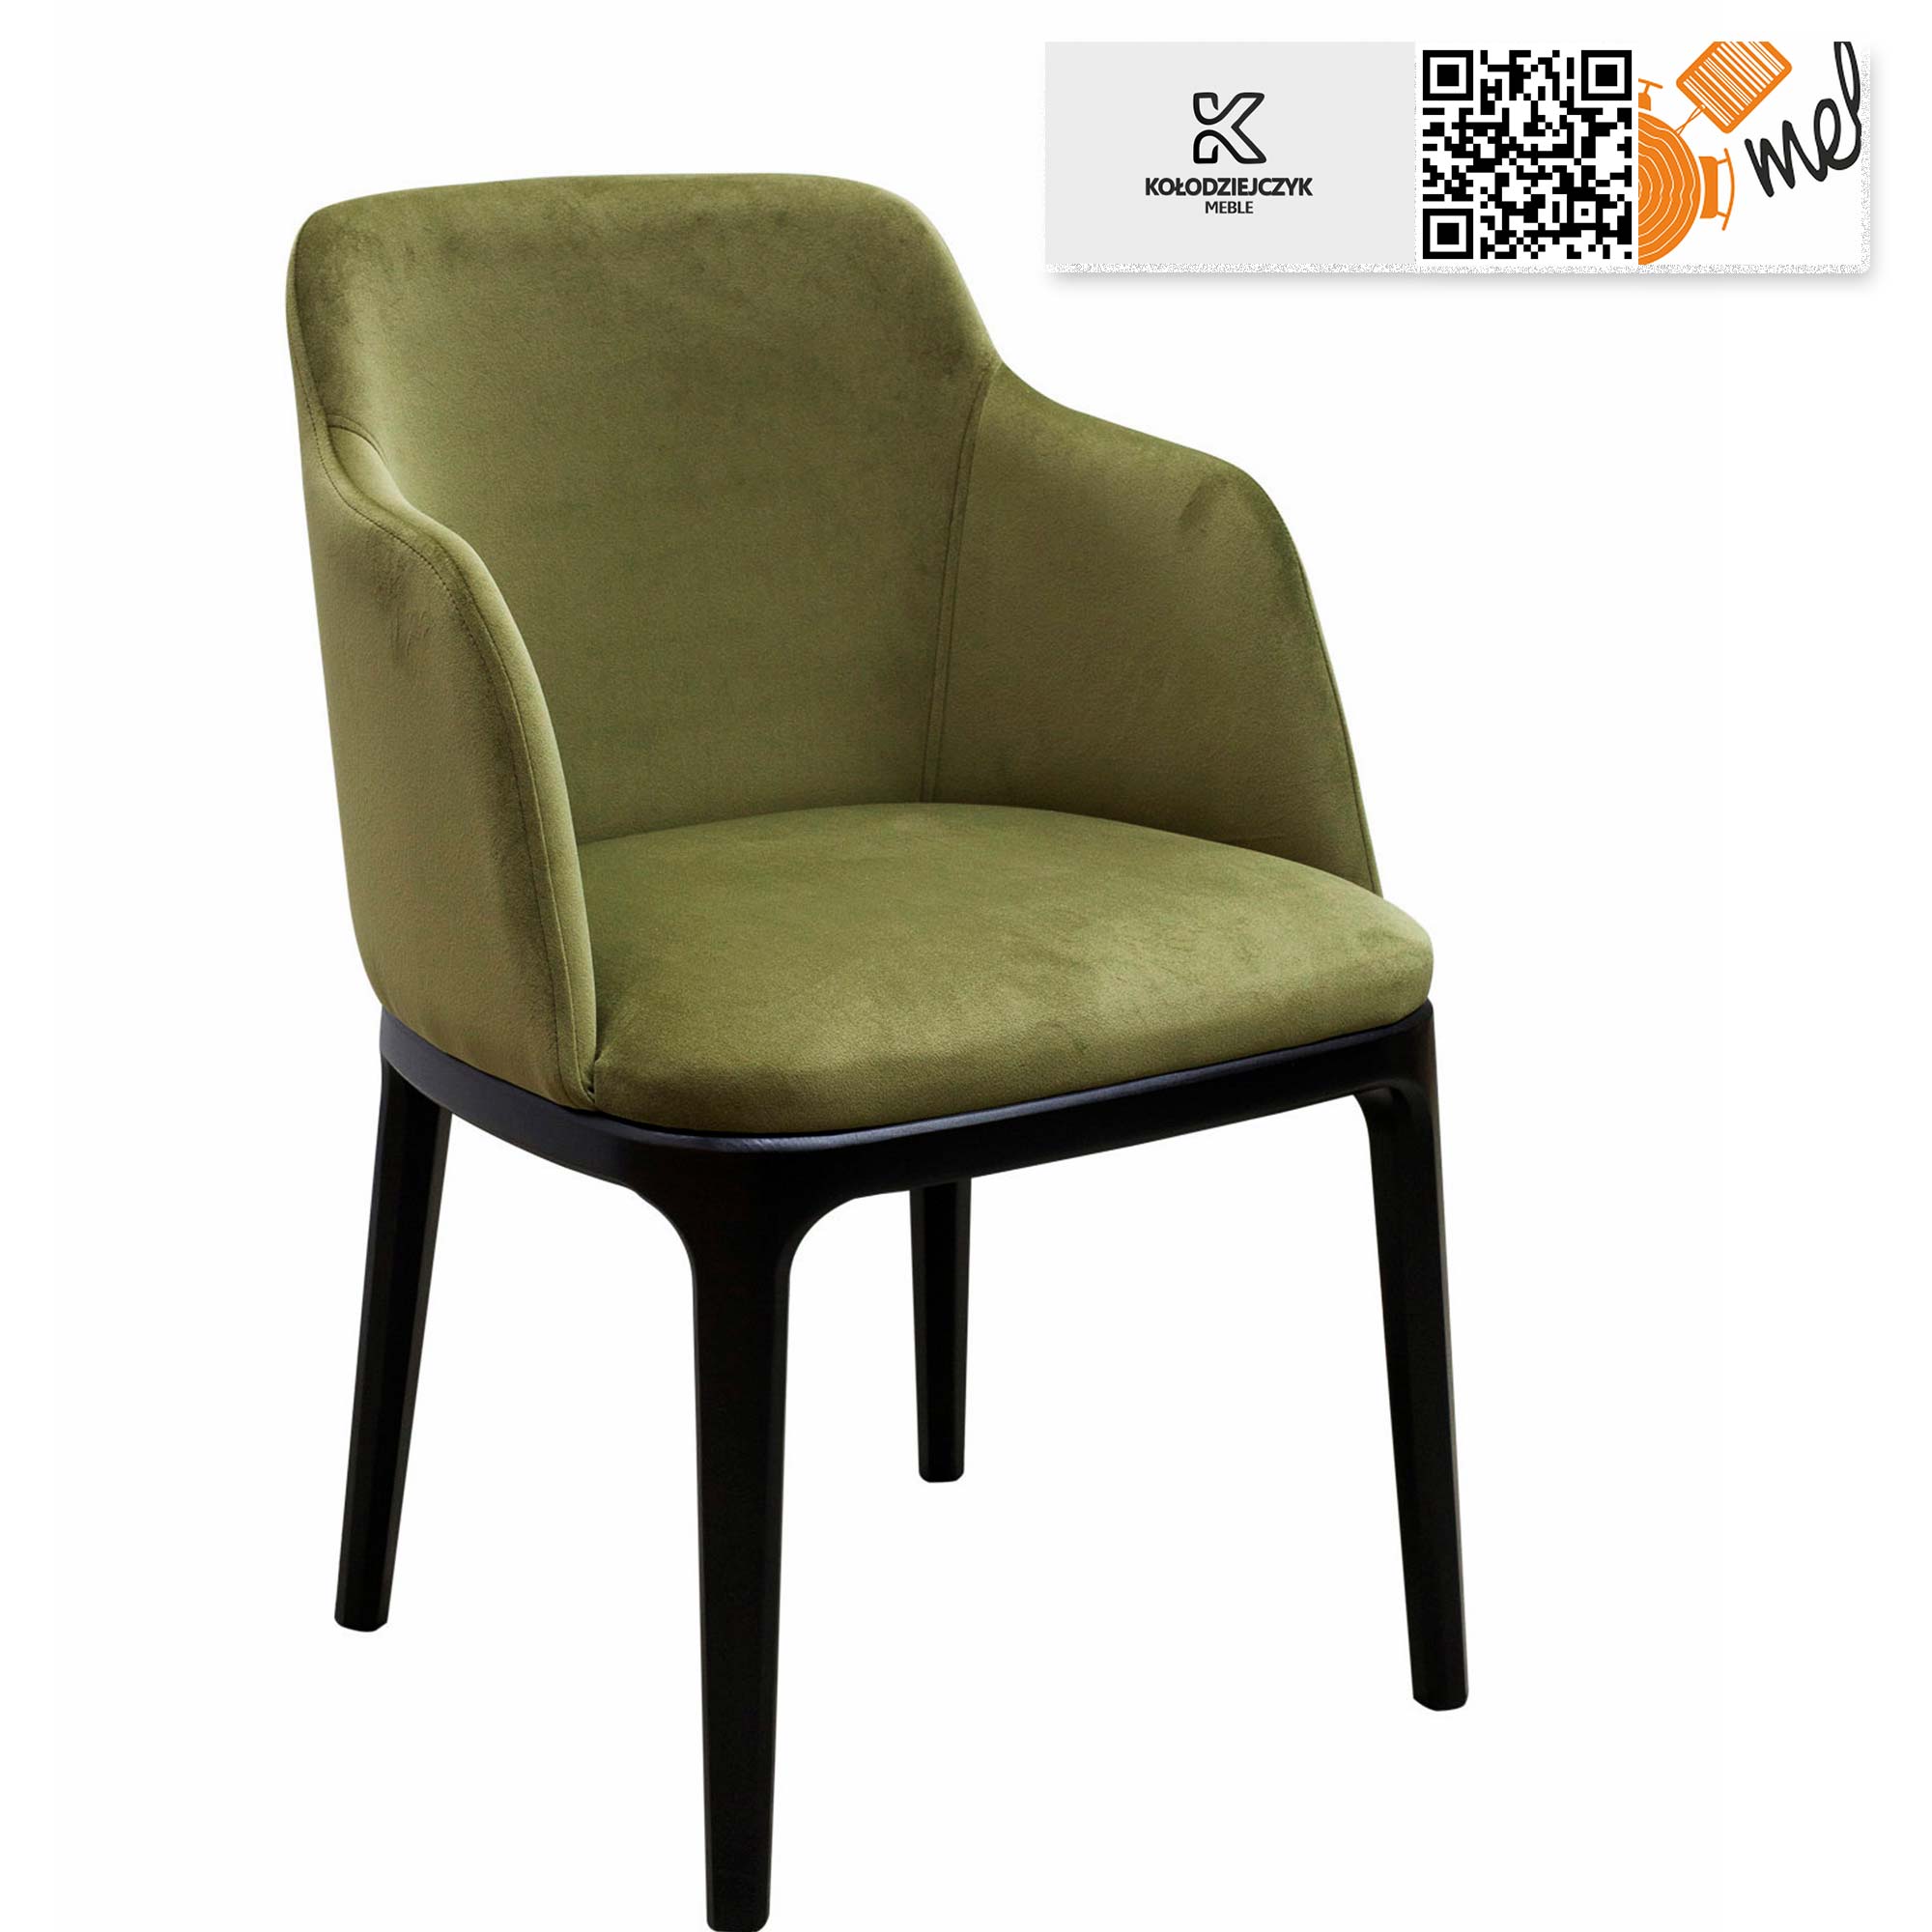 krzeslo k118 nowoczesne tapicerowane nogi metalowe do salonu